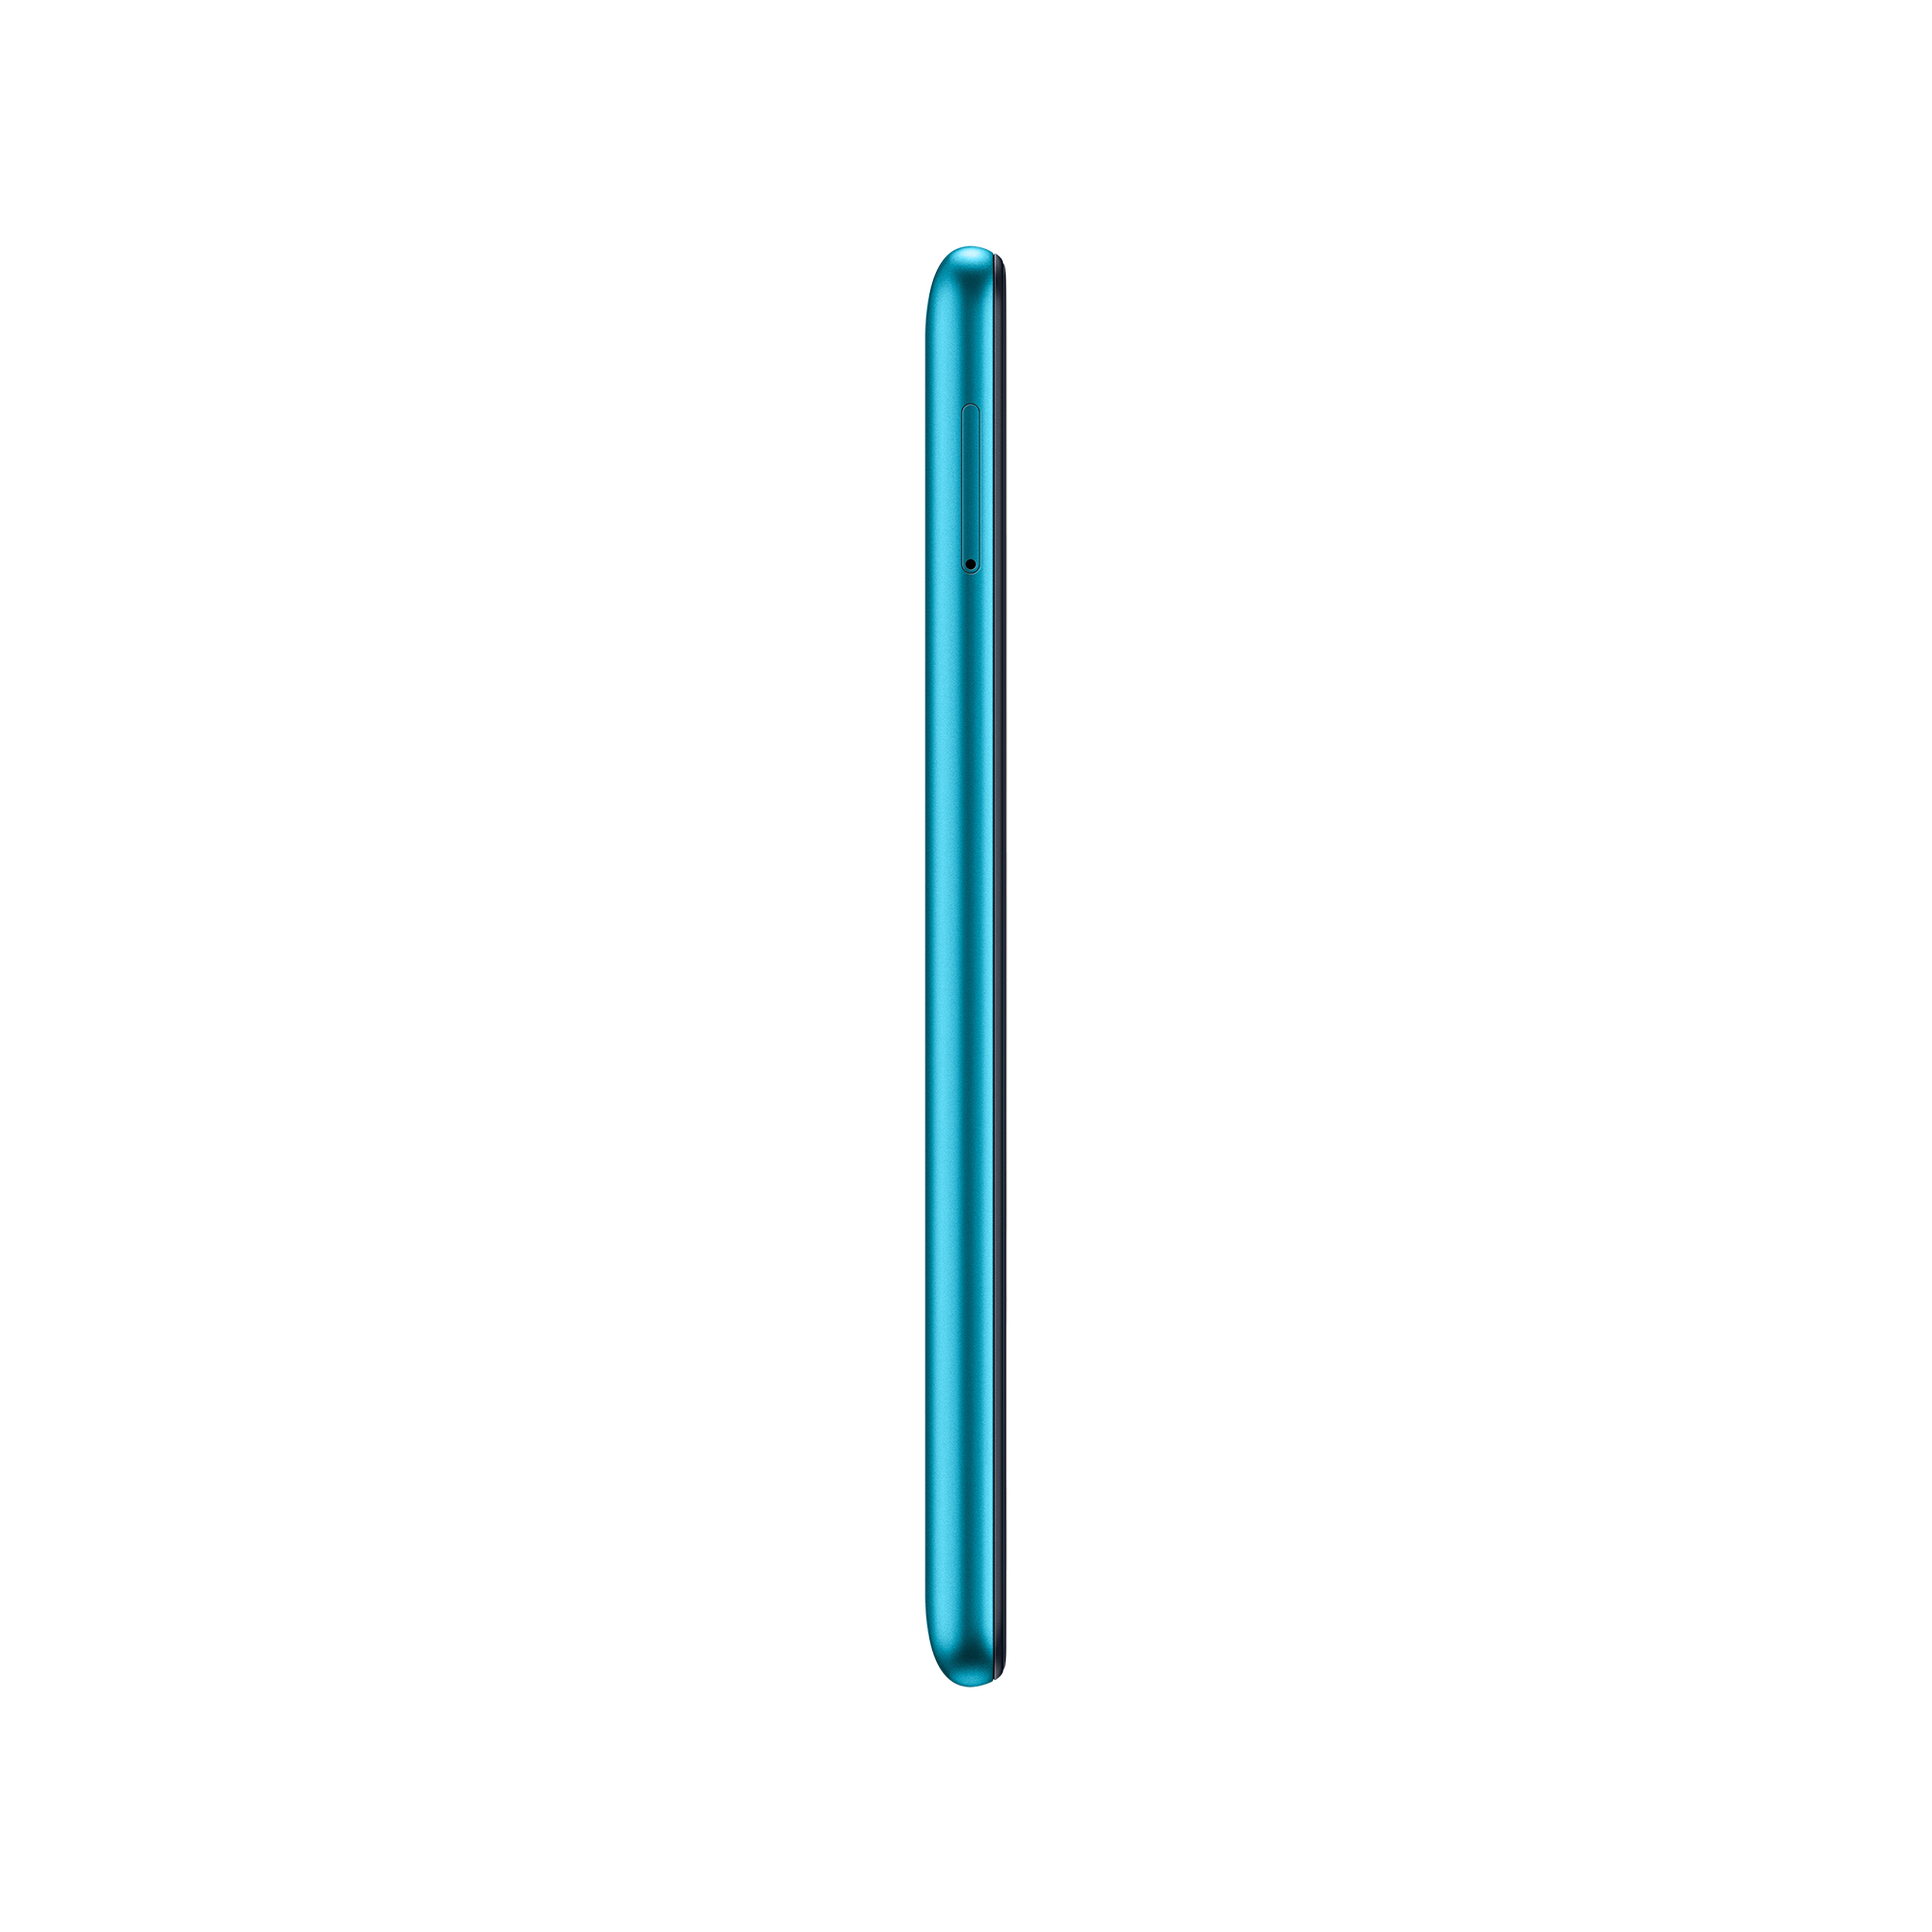 Samsung Galaxy M11 Blue Right Side